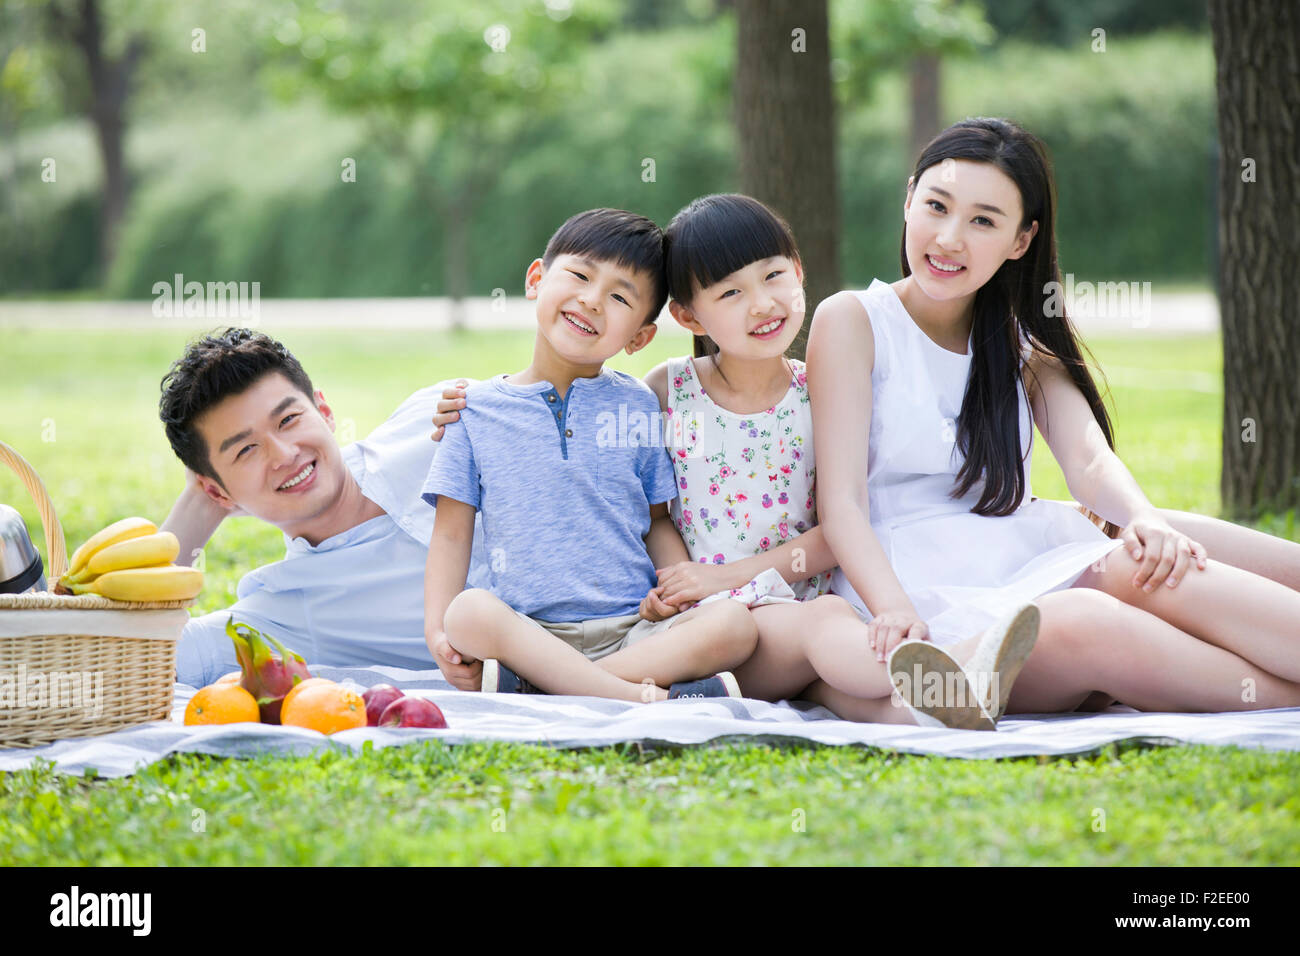 Glückliche junge Familie Picknick auf dem Rasen Stockfoto